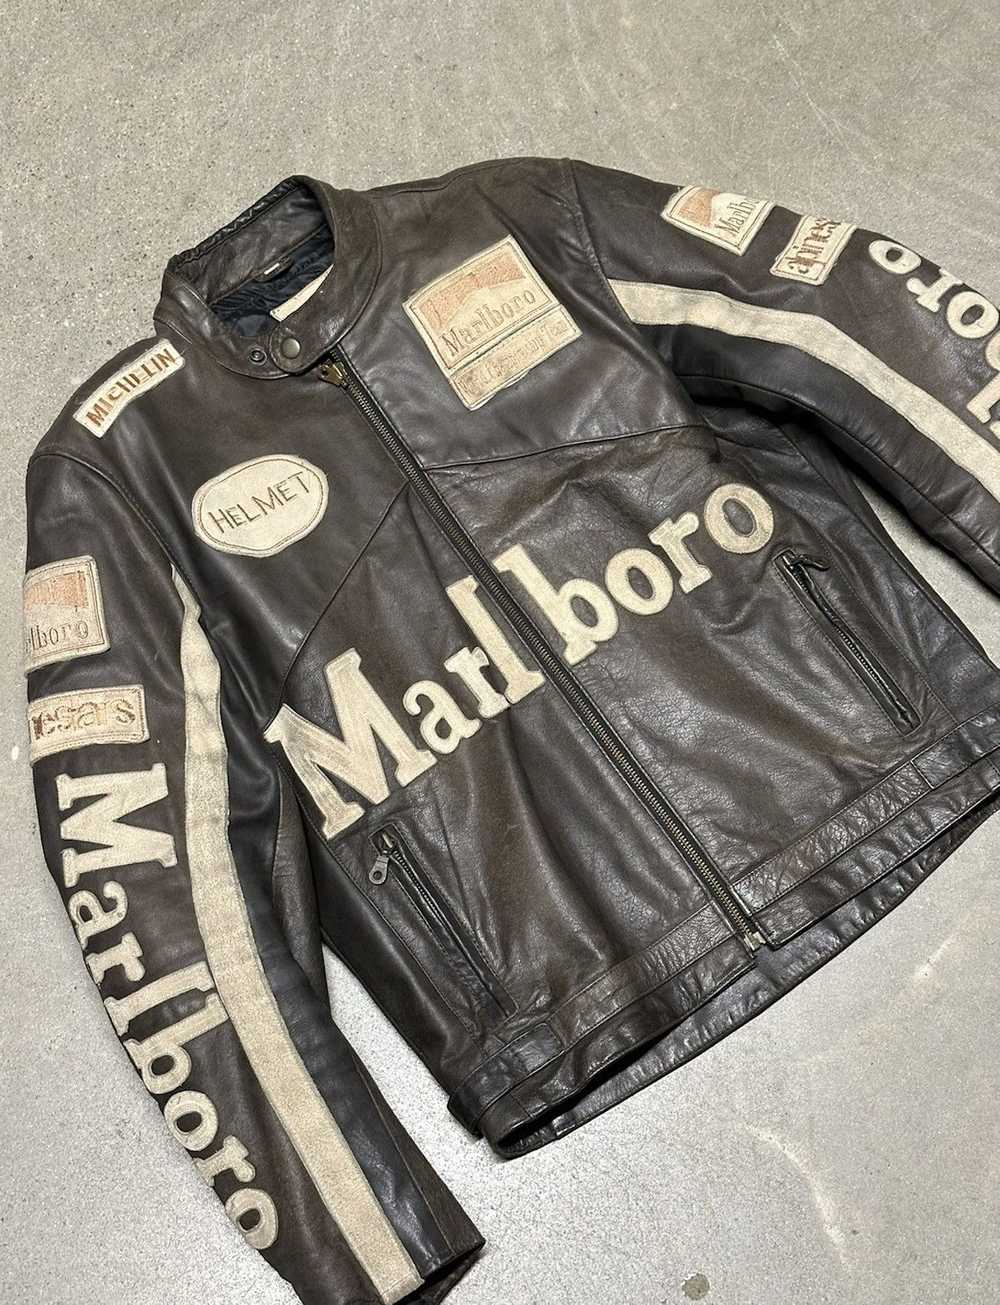 Marlboro × Racing × Vintage Marlboro Rare 90s Lea… - image 2